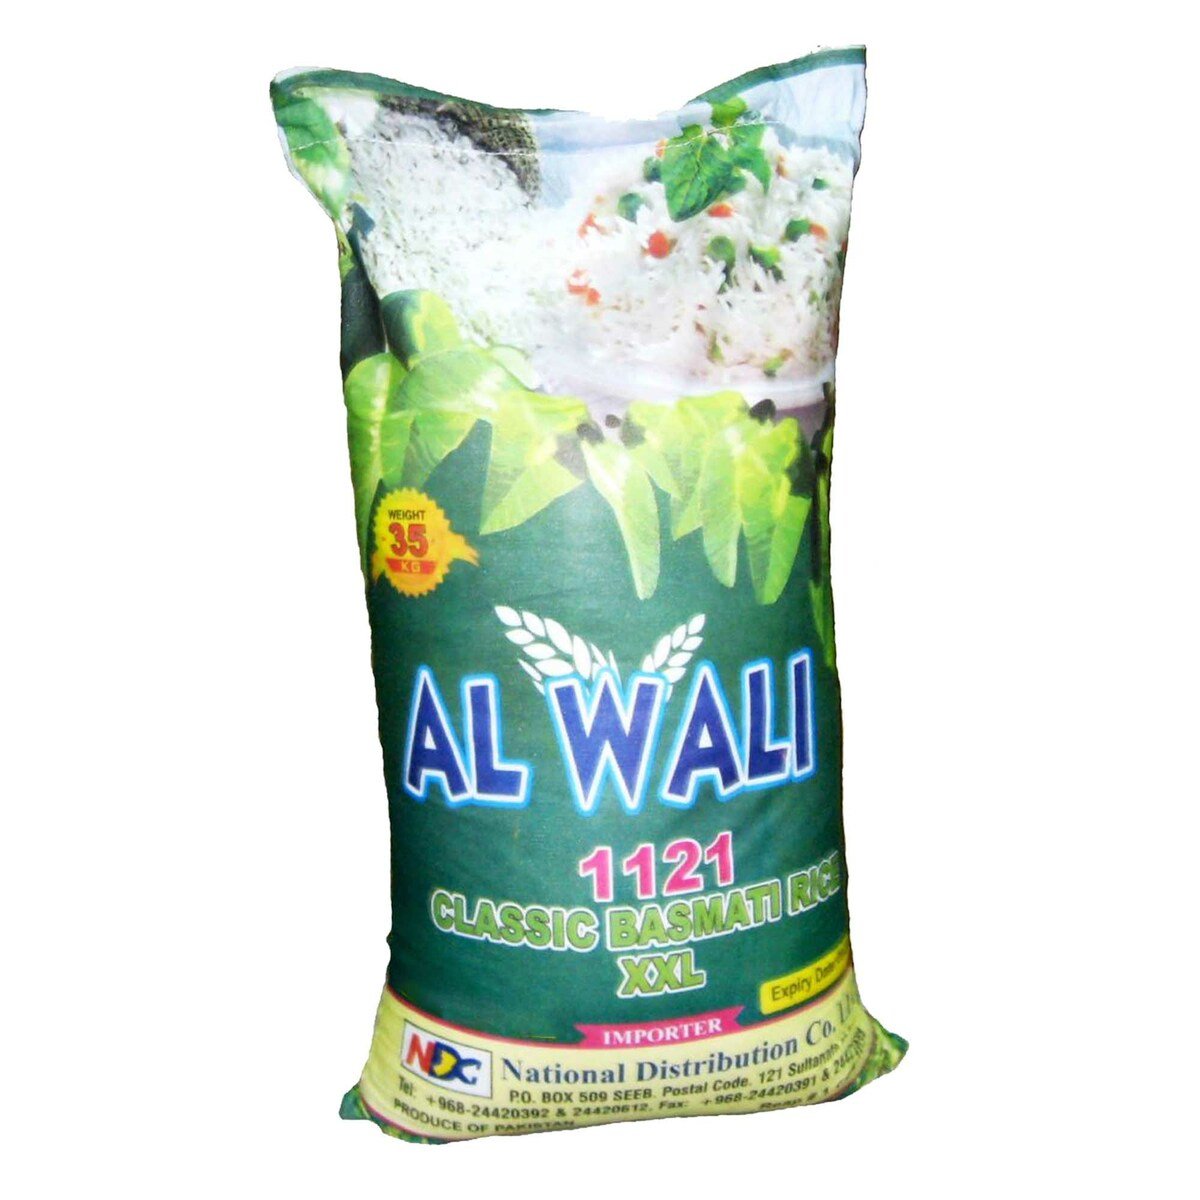 Al Wali 1121 Classic Basmati Rice 35kg